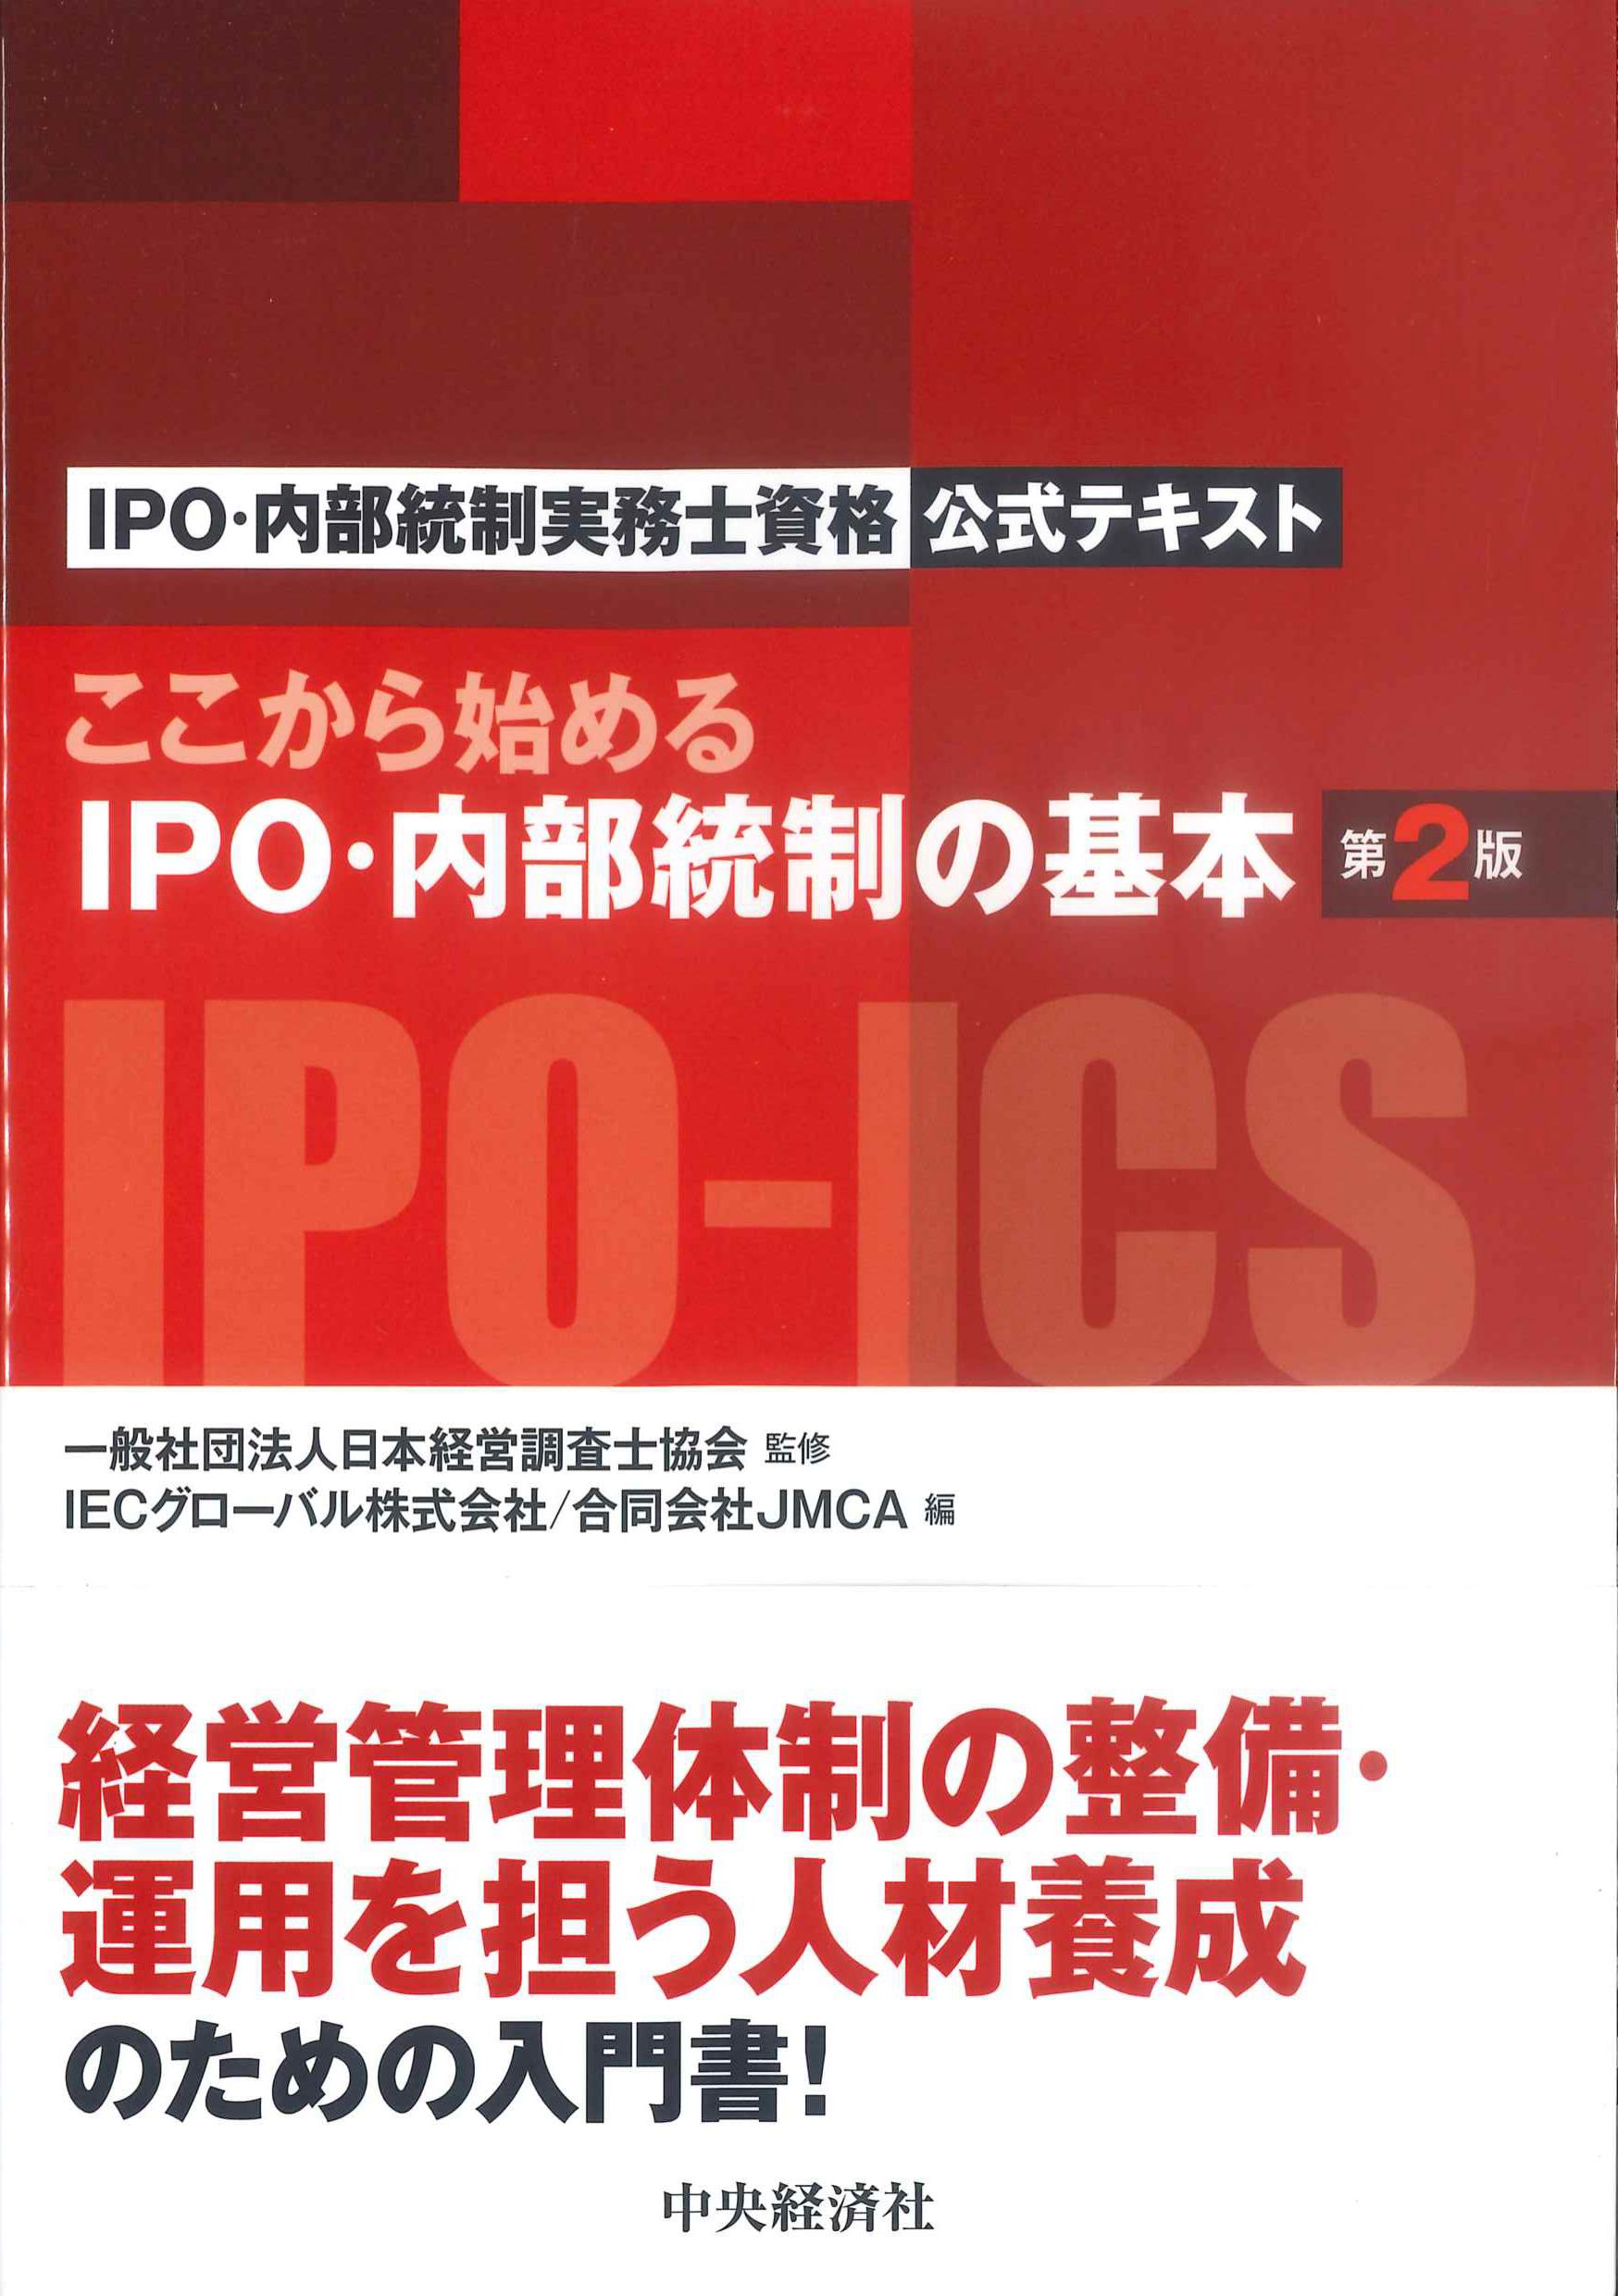 ここから始めるIPO・内部統制の基本　第2版　IPO・内部統制実務士資格公式テキスト　株式会社かんぽうかんぽうオンラインブックストア